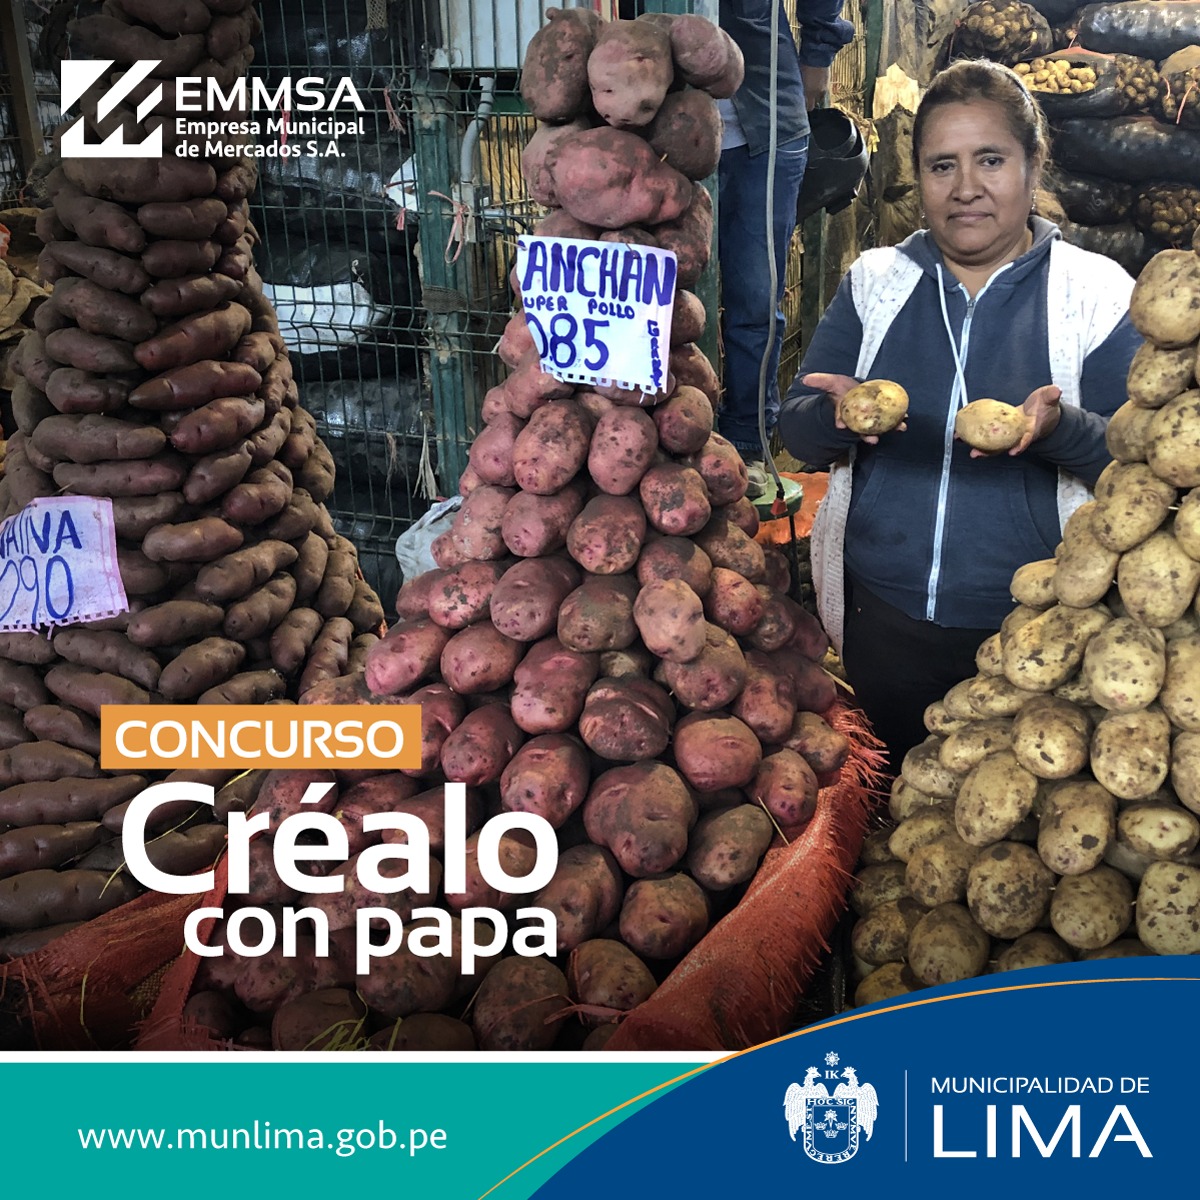 En marco a las celebraciones por el día nacional de la papa, EMMSA lanza el primer concurso “Créalo con papas”